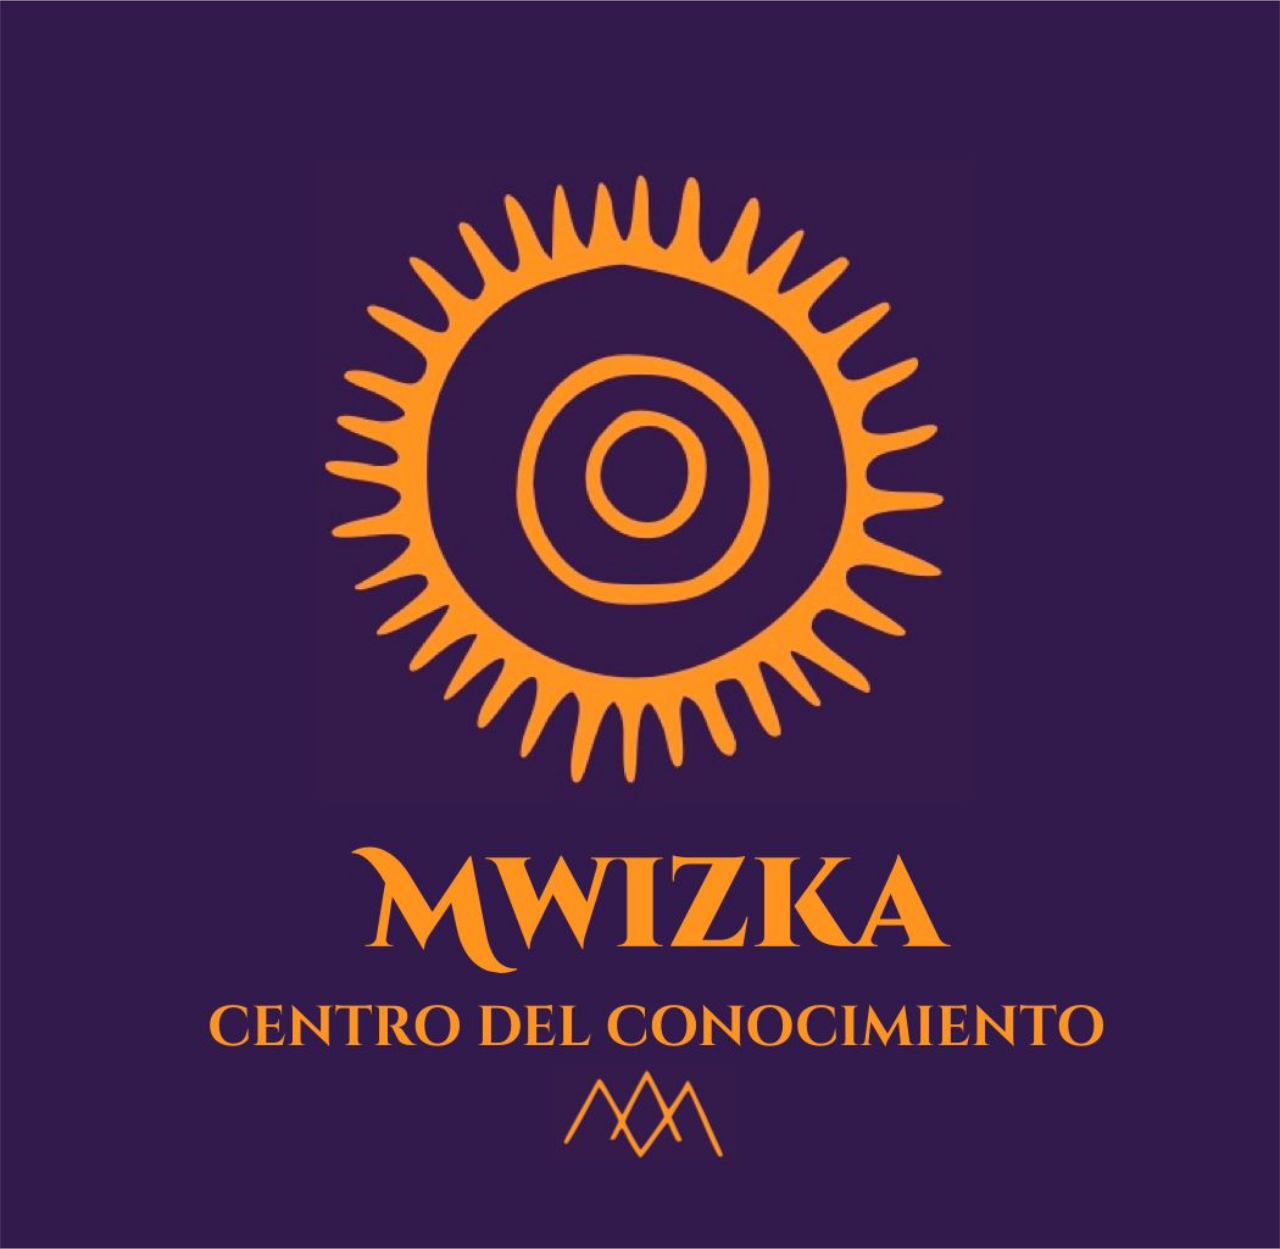 MWIZKA: CENTRO DEL CONOCIMIENTO's web page